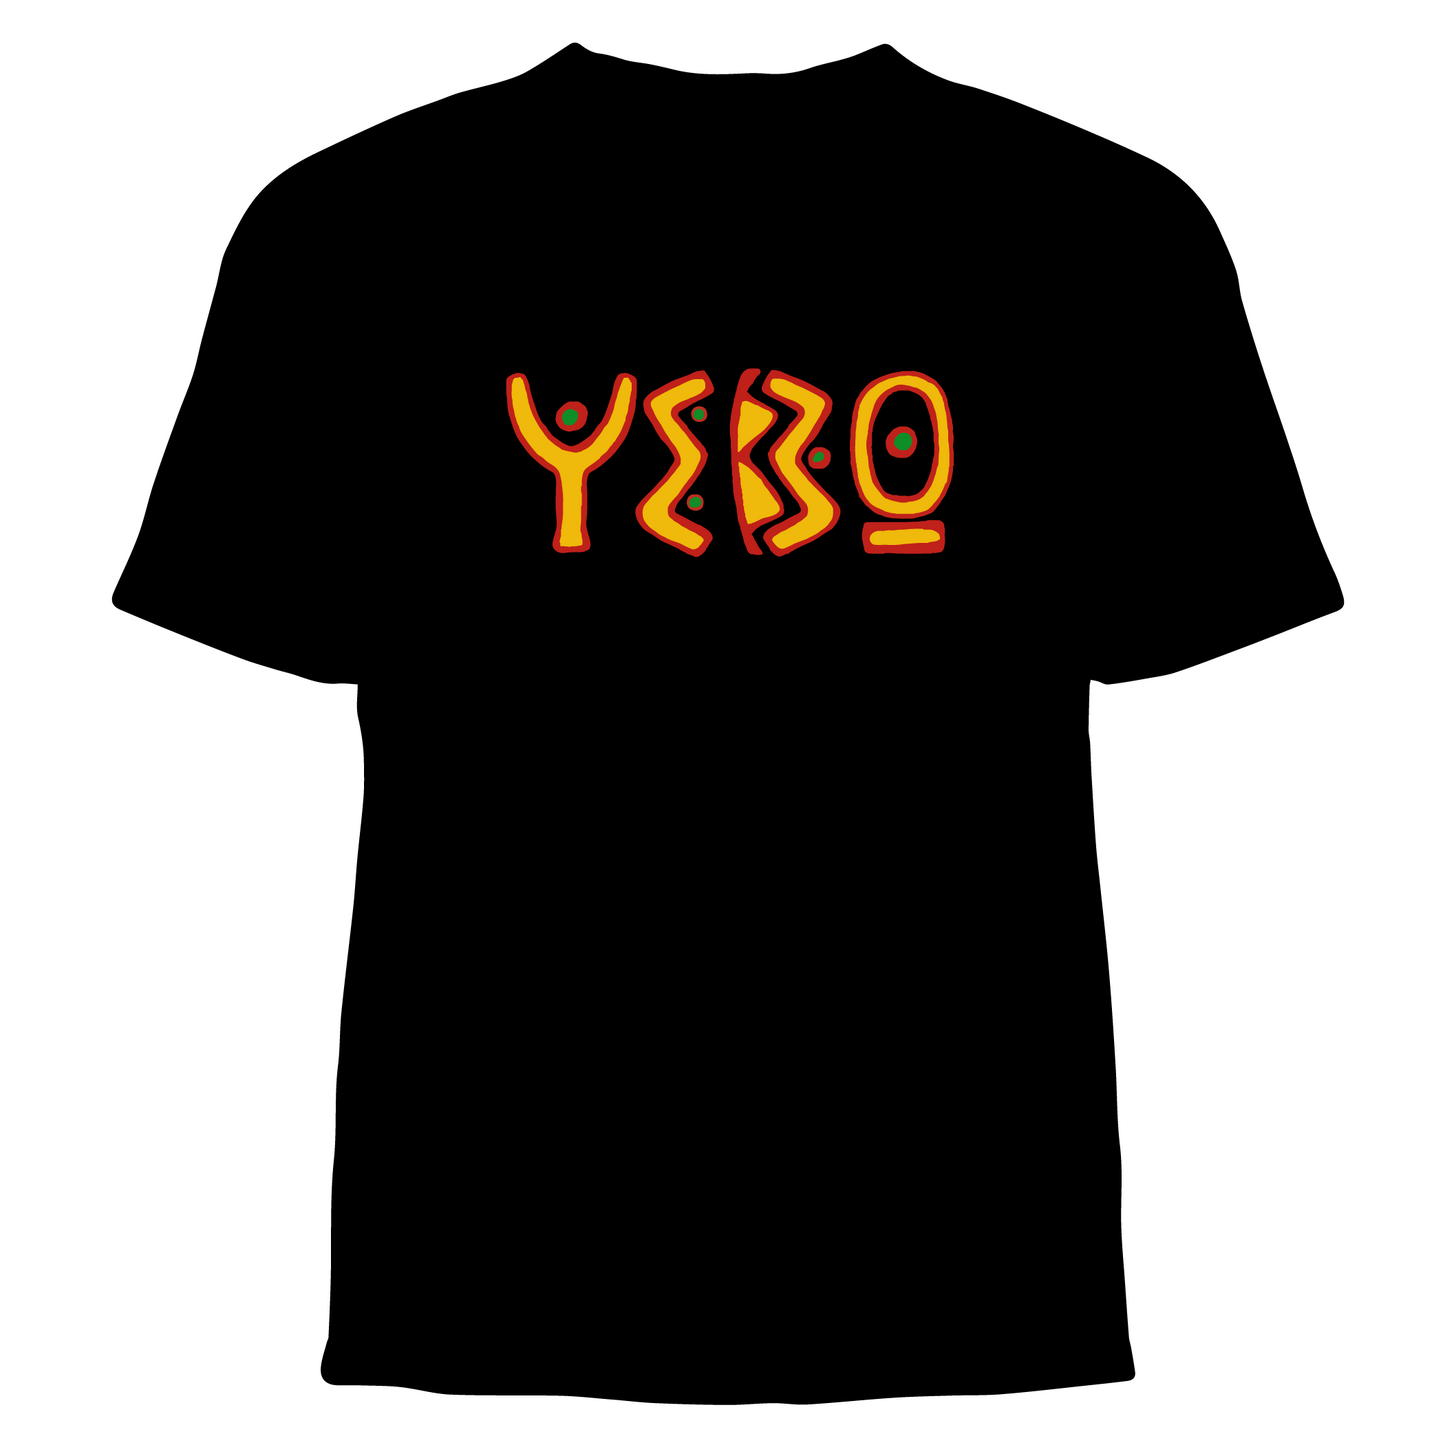 "YEBO" Graphic Tee Shirt